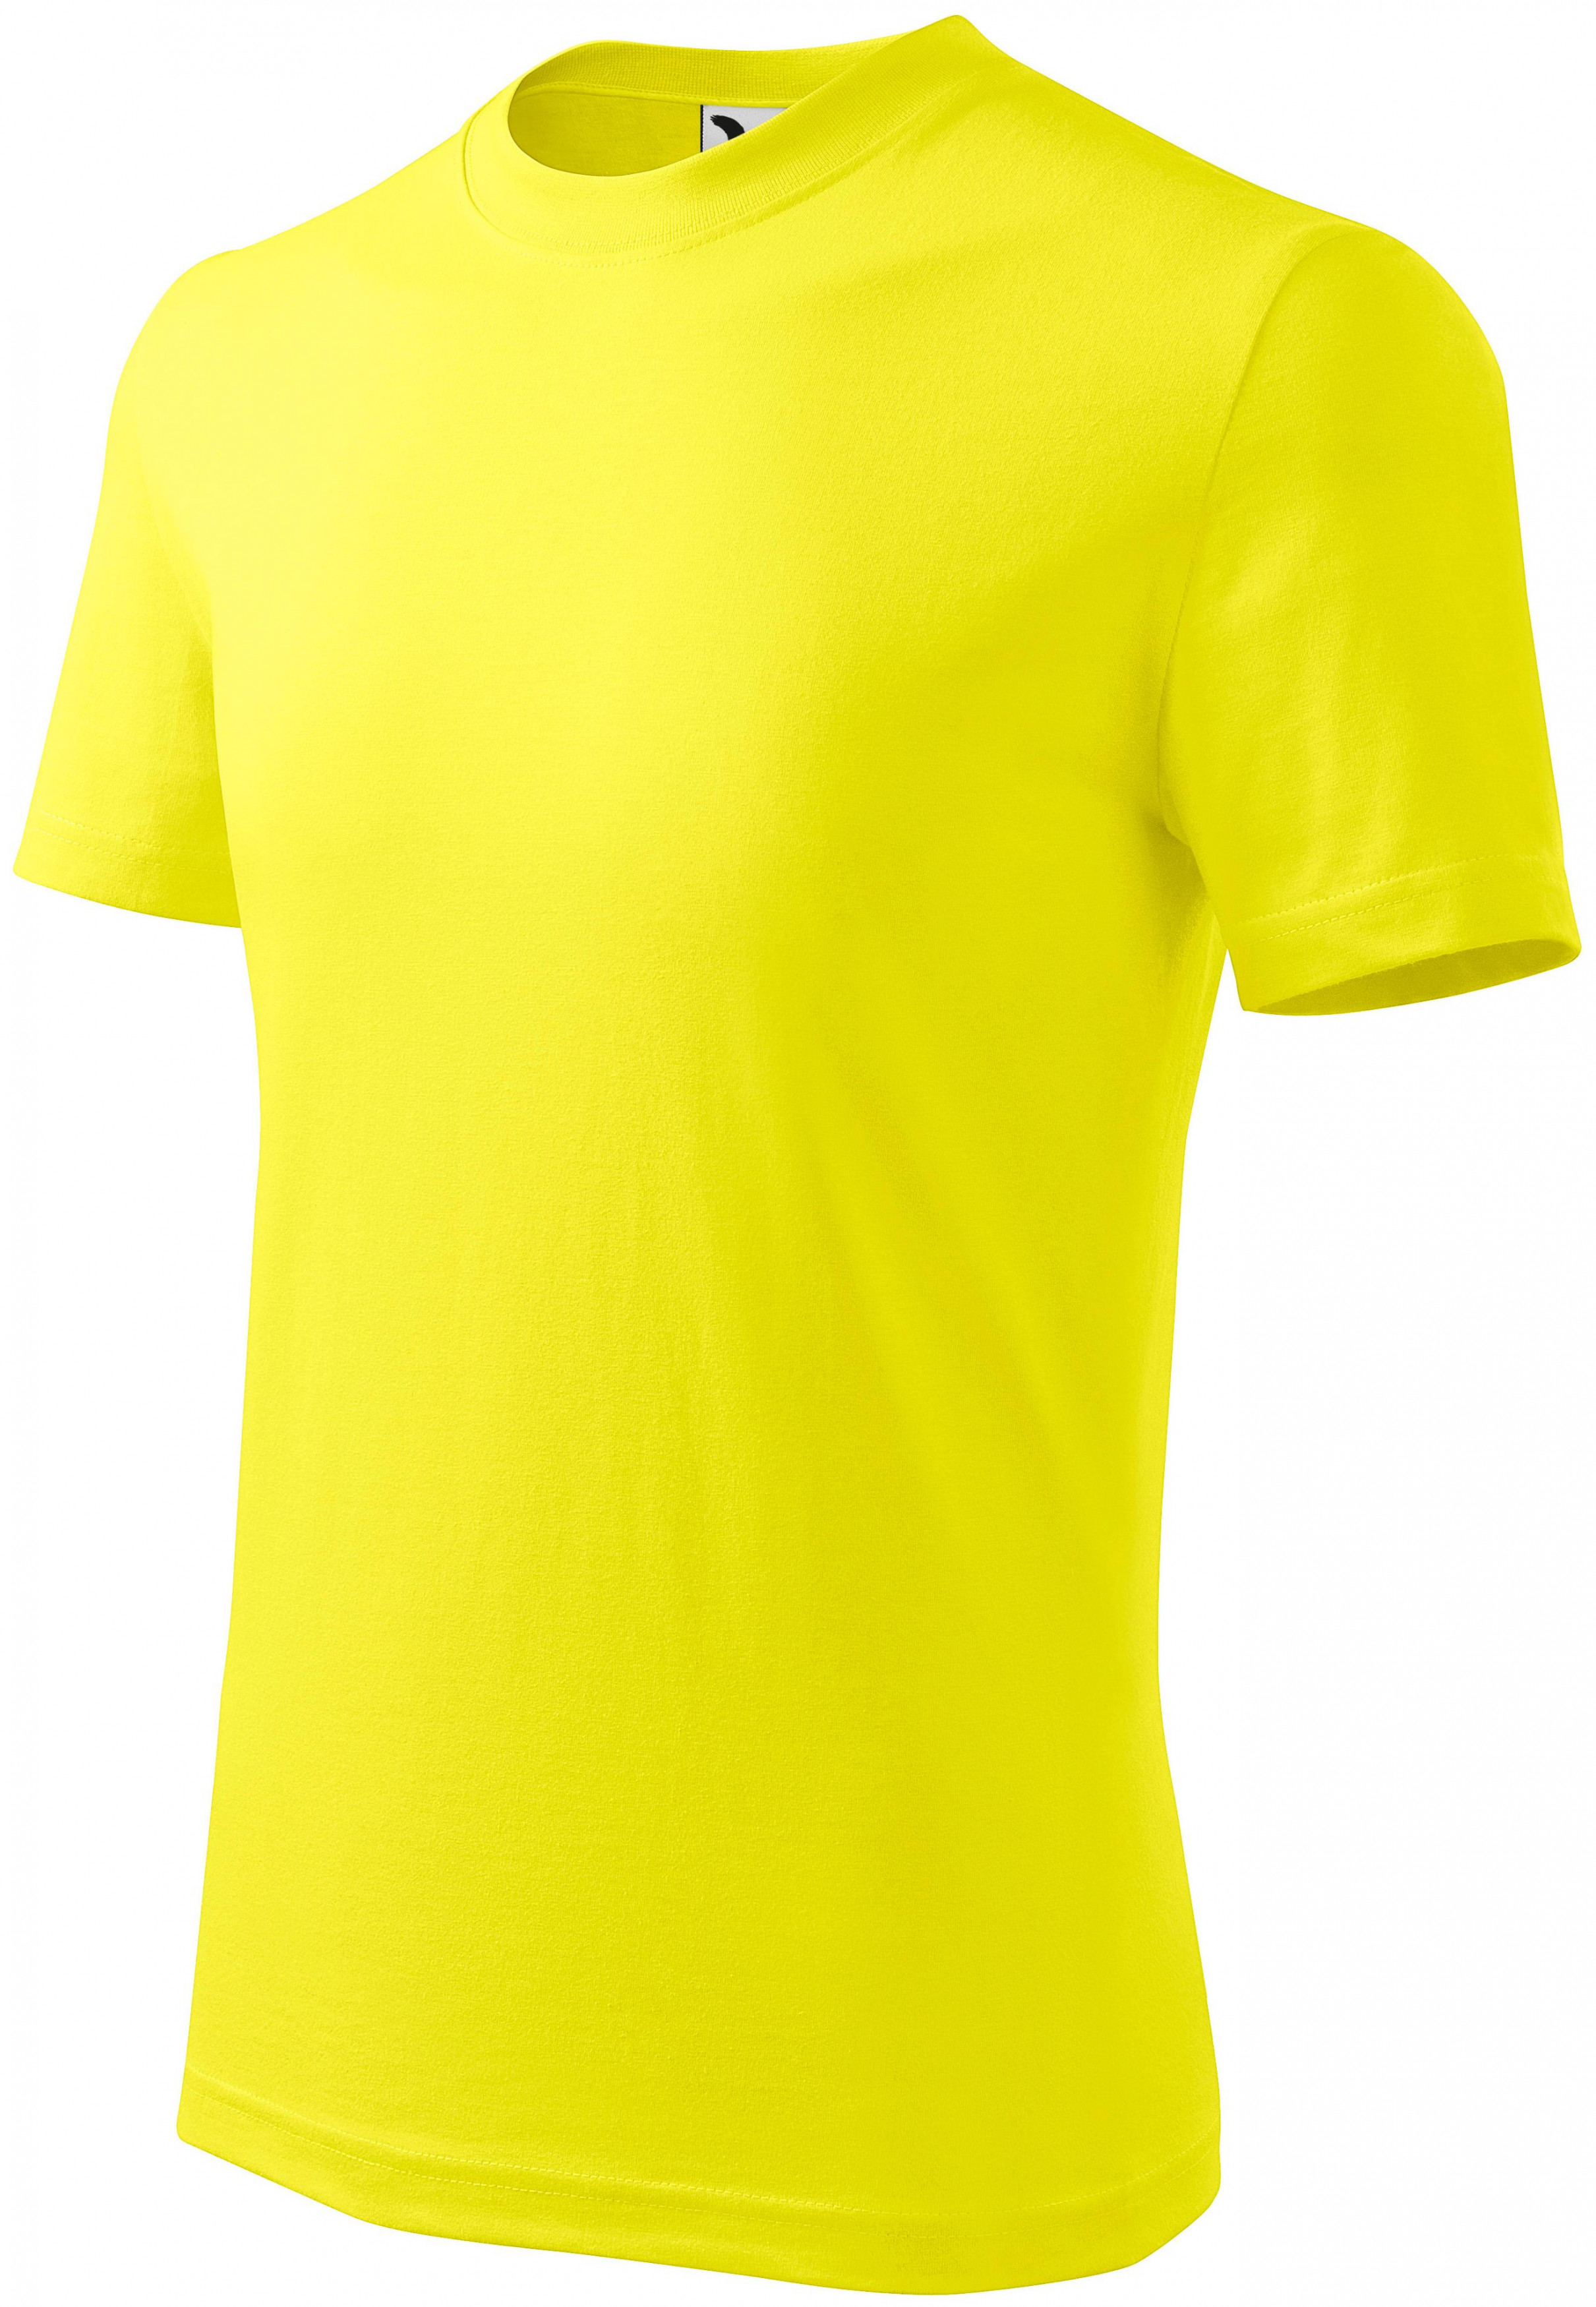 Detské tričko jednoduché, citrónová, 110cm / 4roky